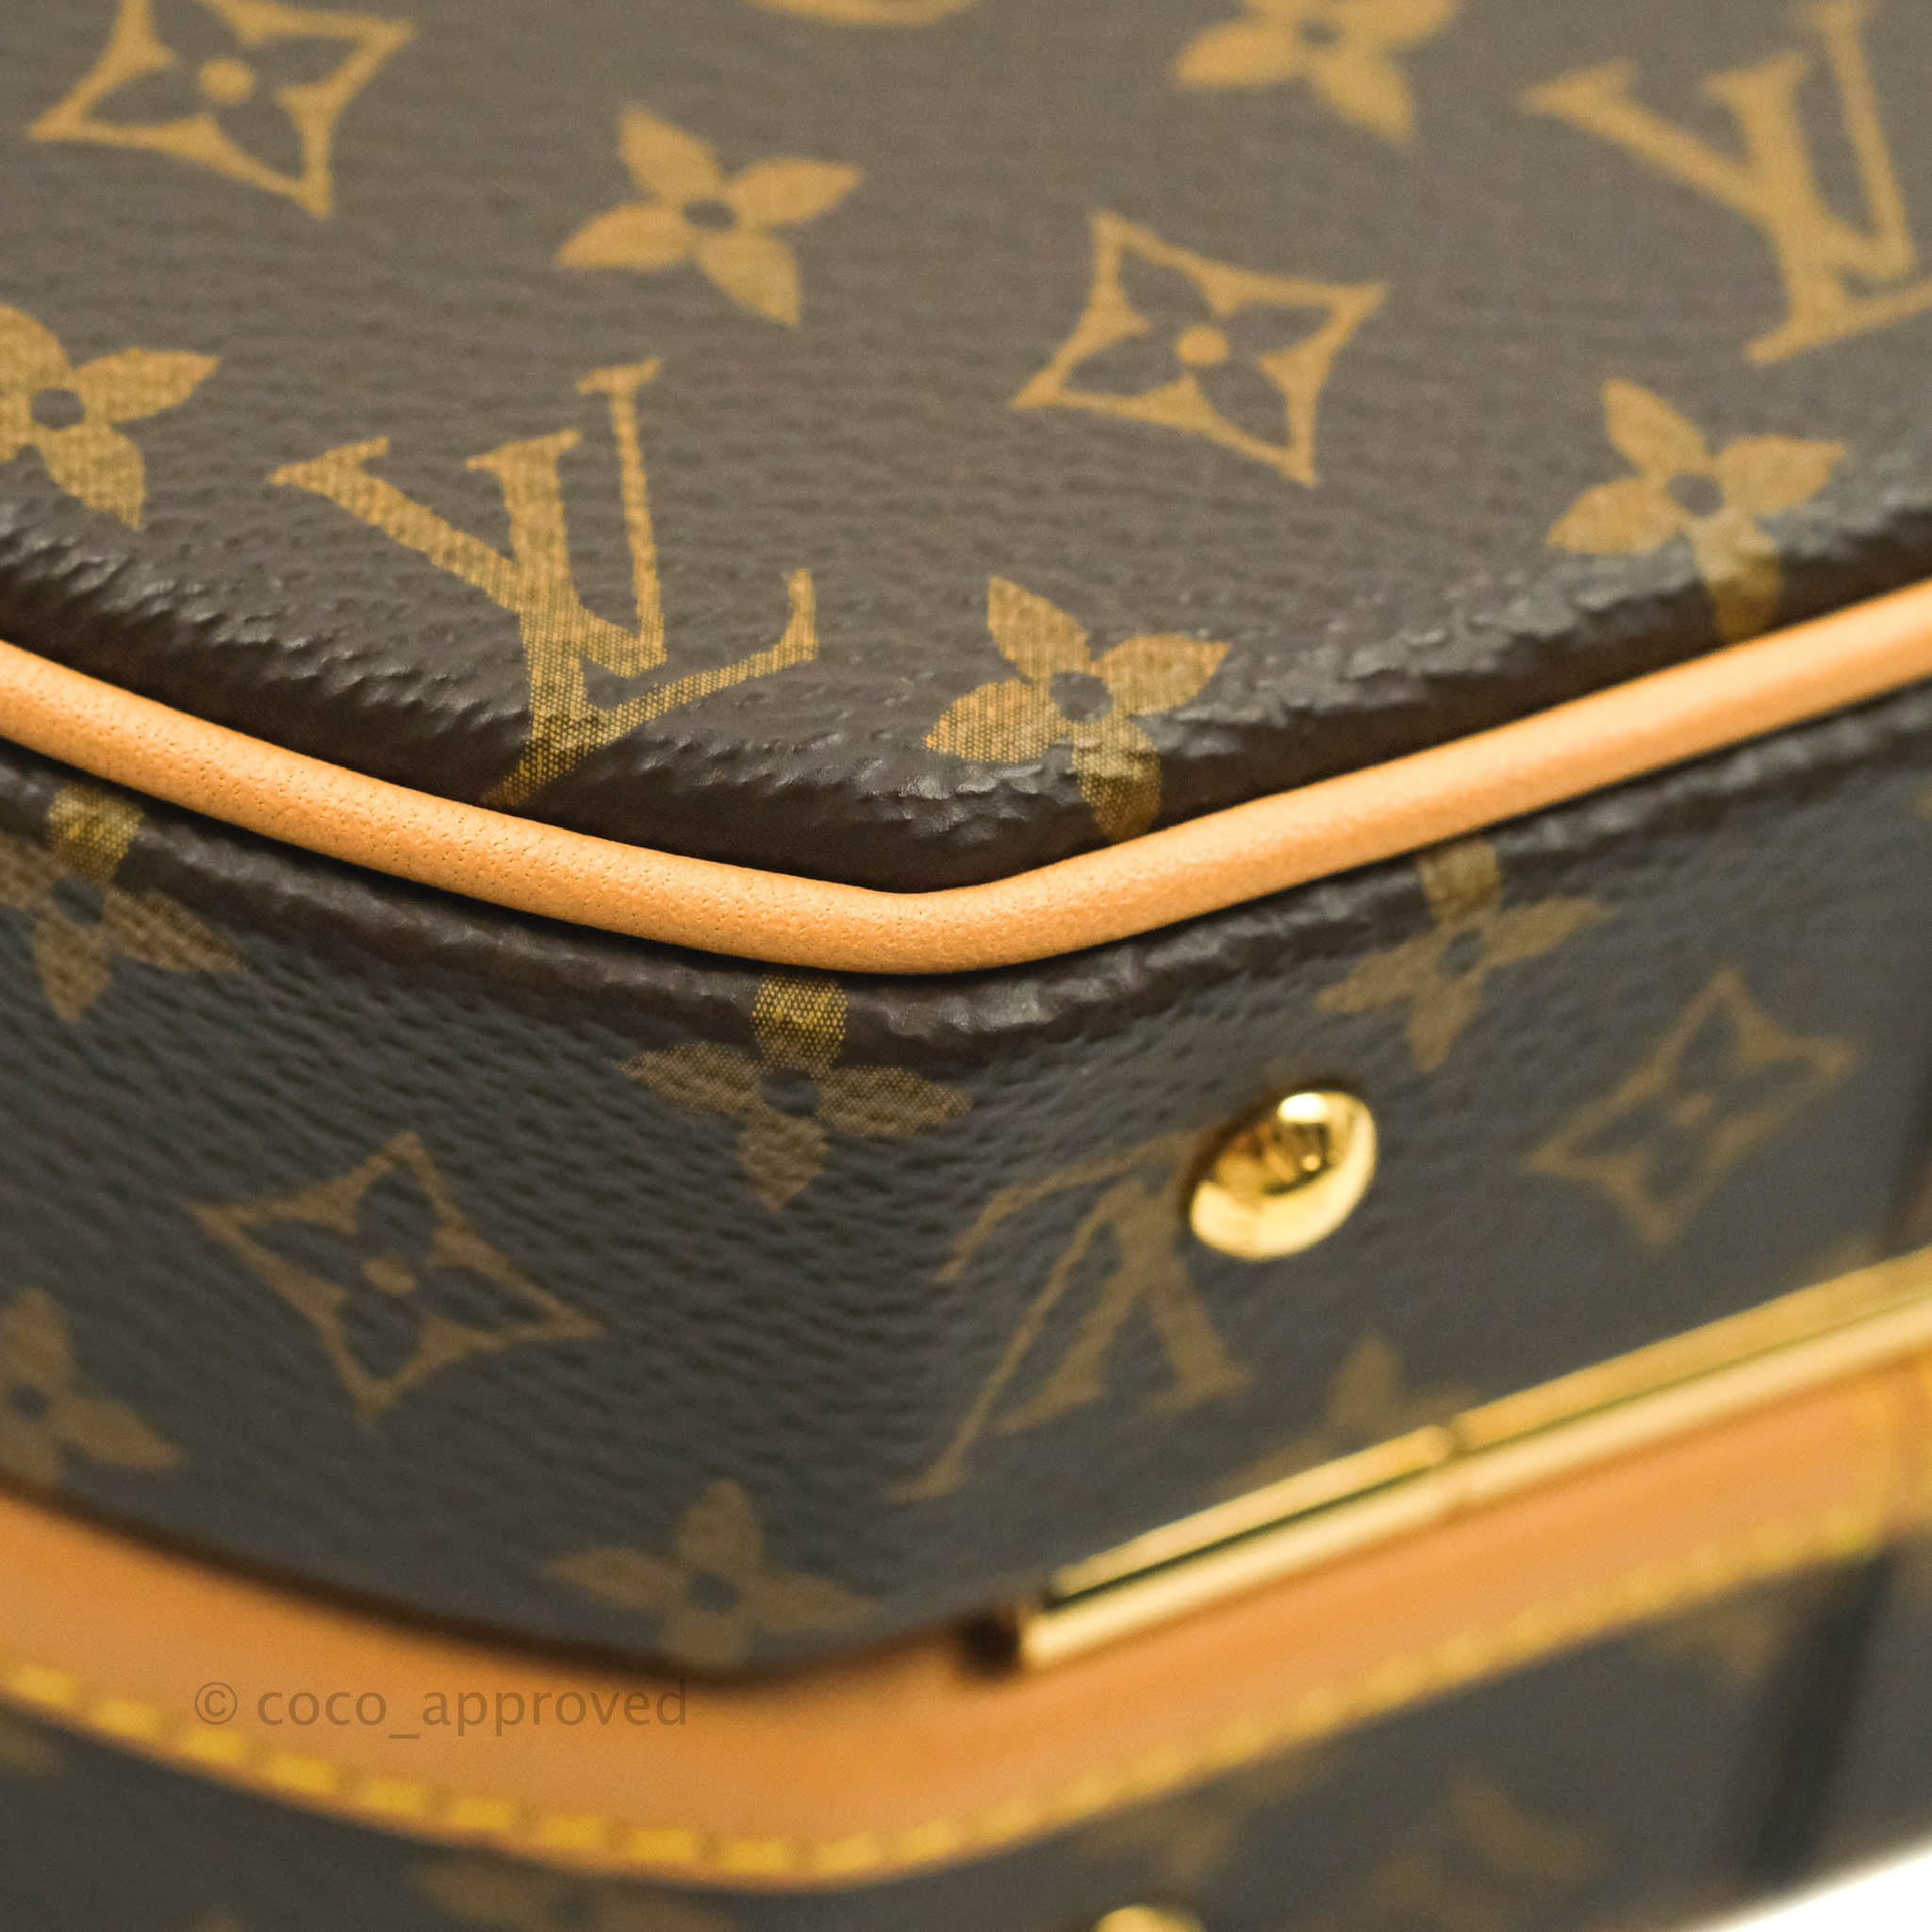 Louis Vuitton Petite Boite Chapeau Bag Monogram Canvas Brown 2280643